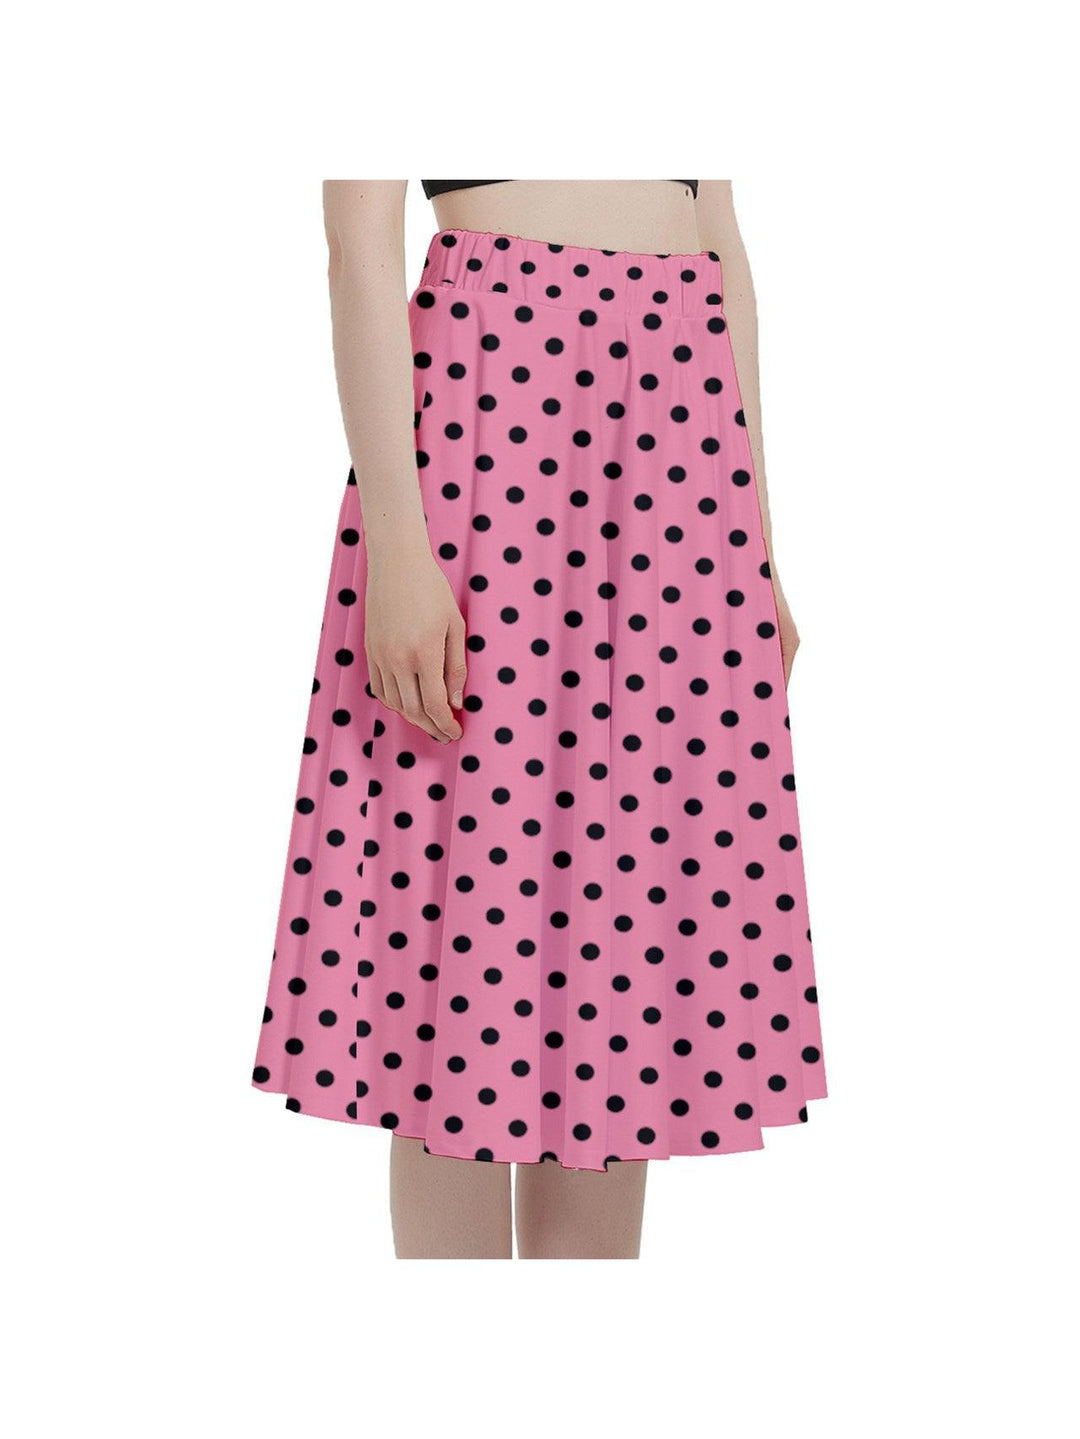 Flamingo Pink Polka Dots Full Circle Skirt